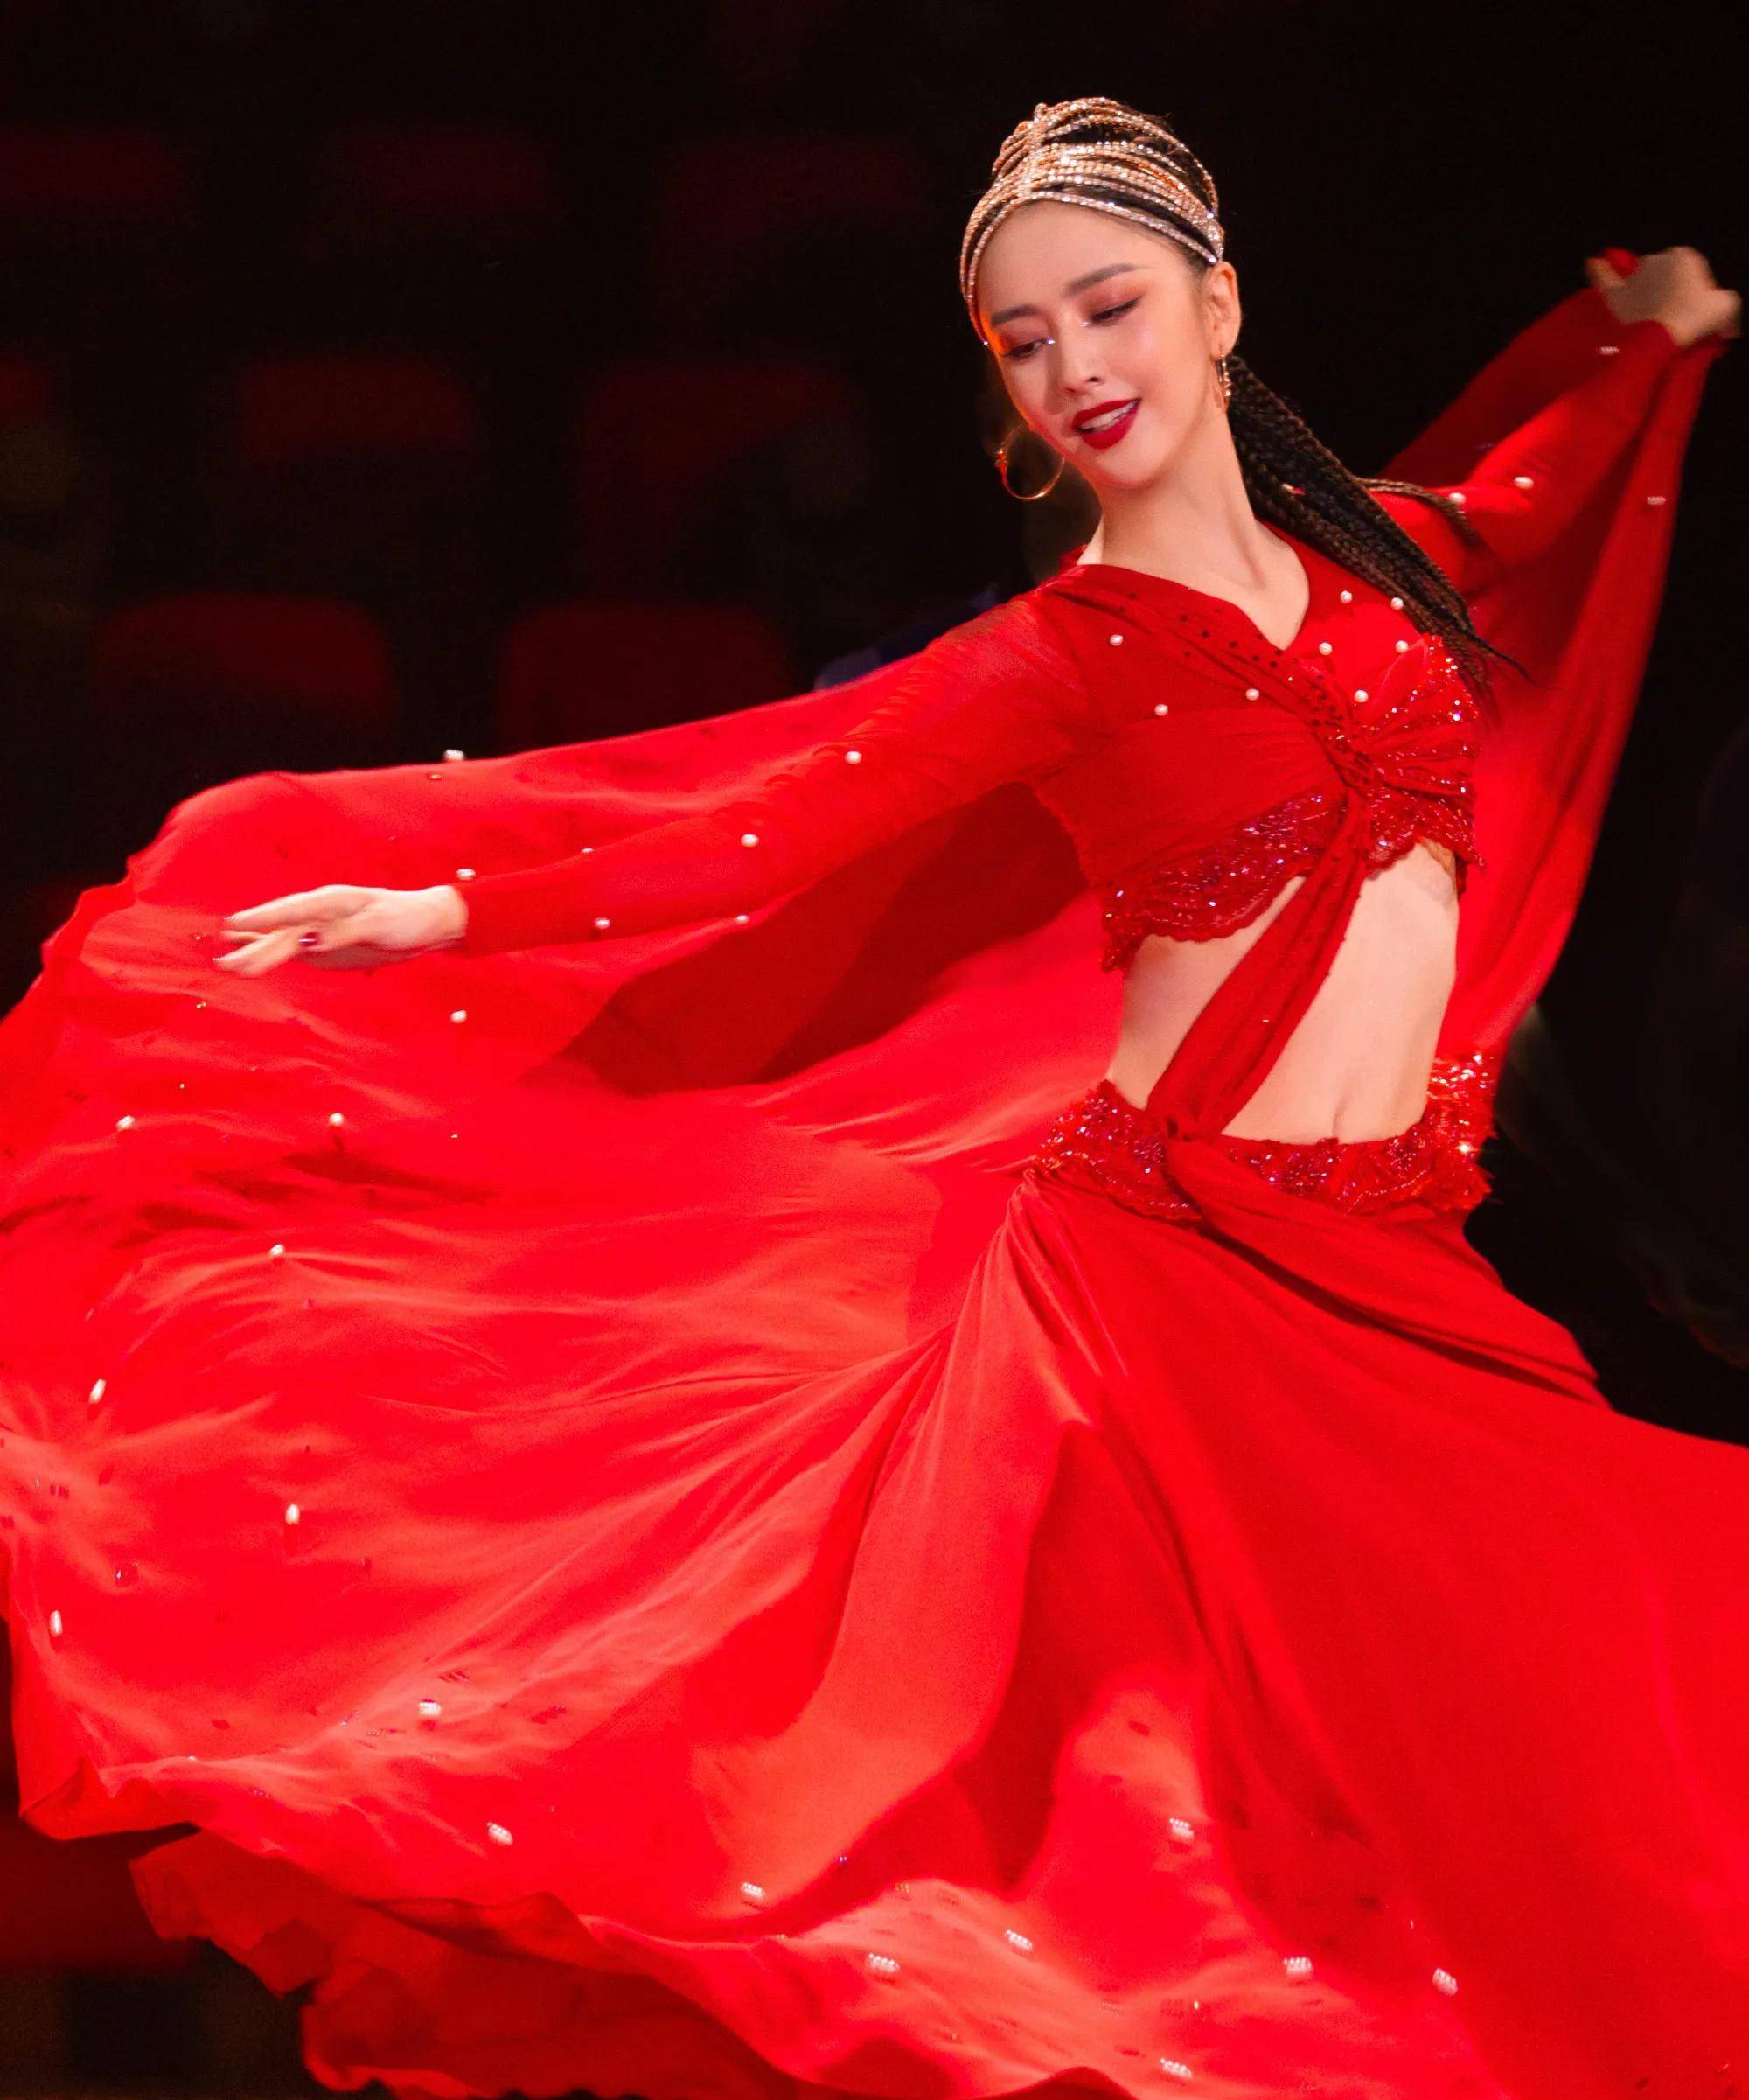 佟丽娅《舞蹈生》导师大秀,身着烈焰红纱裙气场全开,迷人奔放